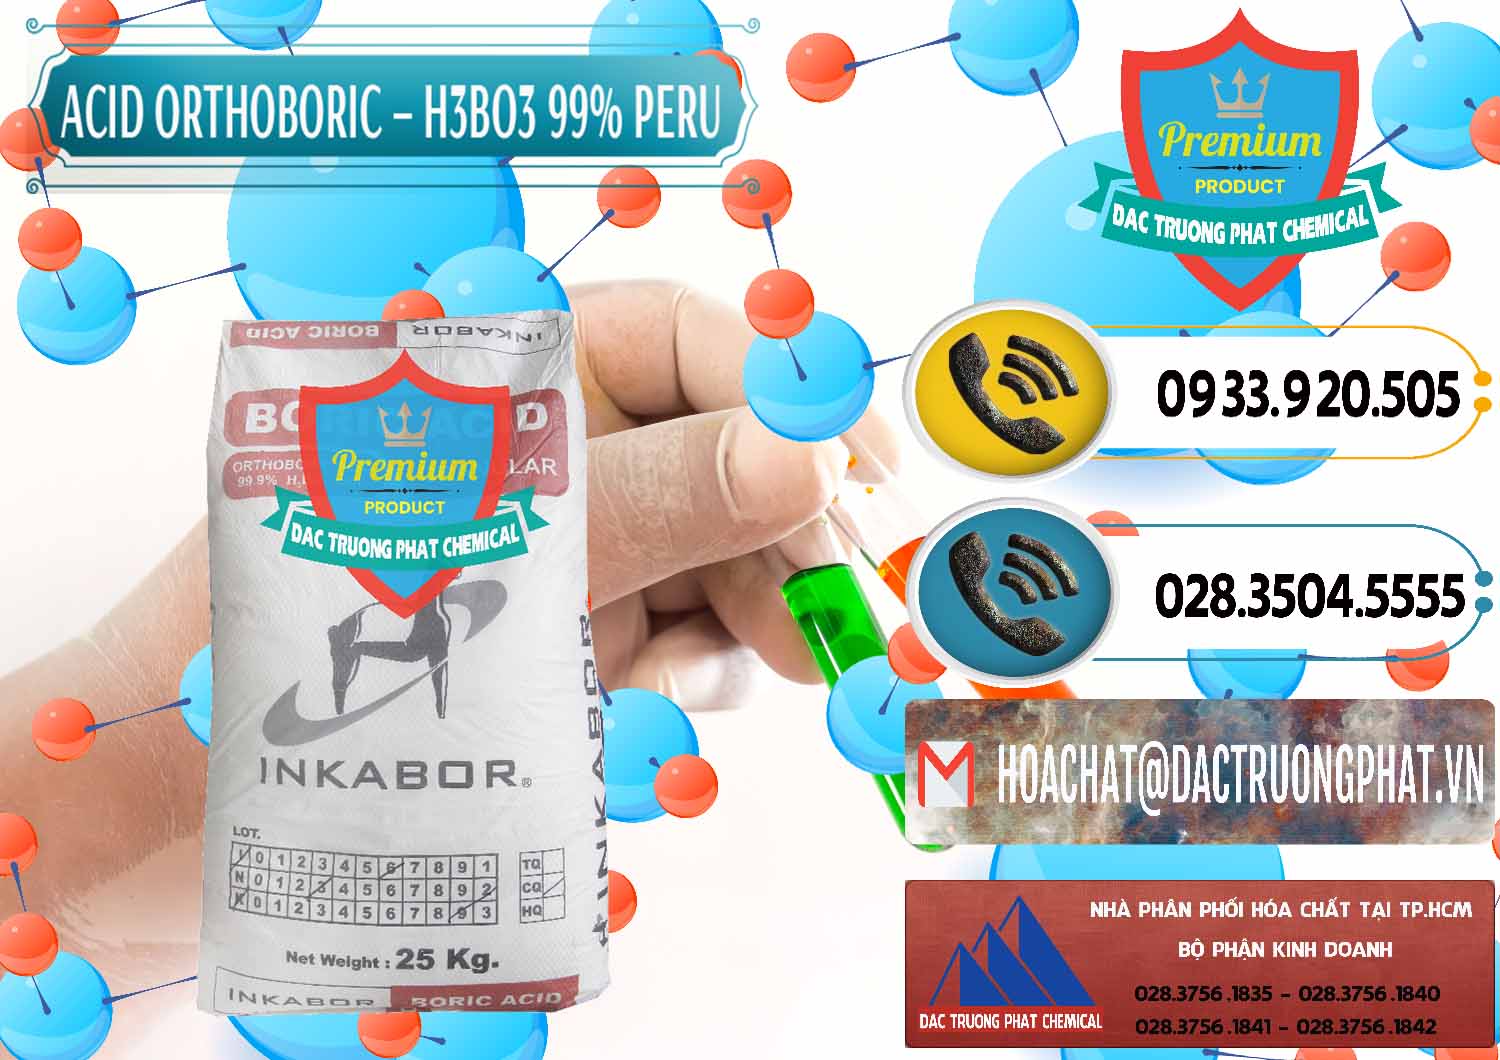 Chuyên phân phối _ bán Acid Boric – Axit Boric H3BO3 99% Inkabor Peru - 0280 - Nơi cung cấp ( phân phối ) hóa chất tại TP.HCM - hoachatdetnhuom.vn